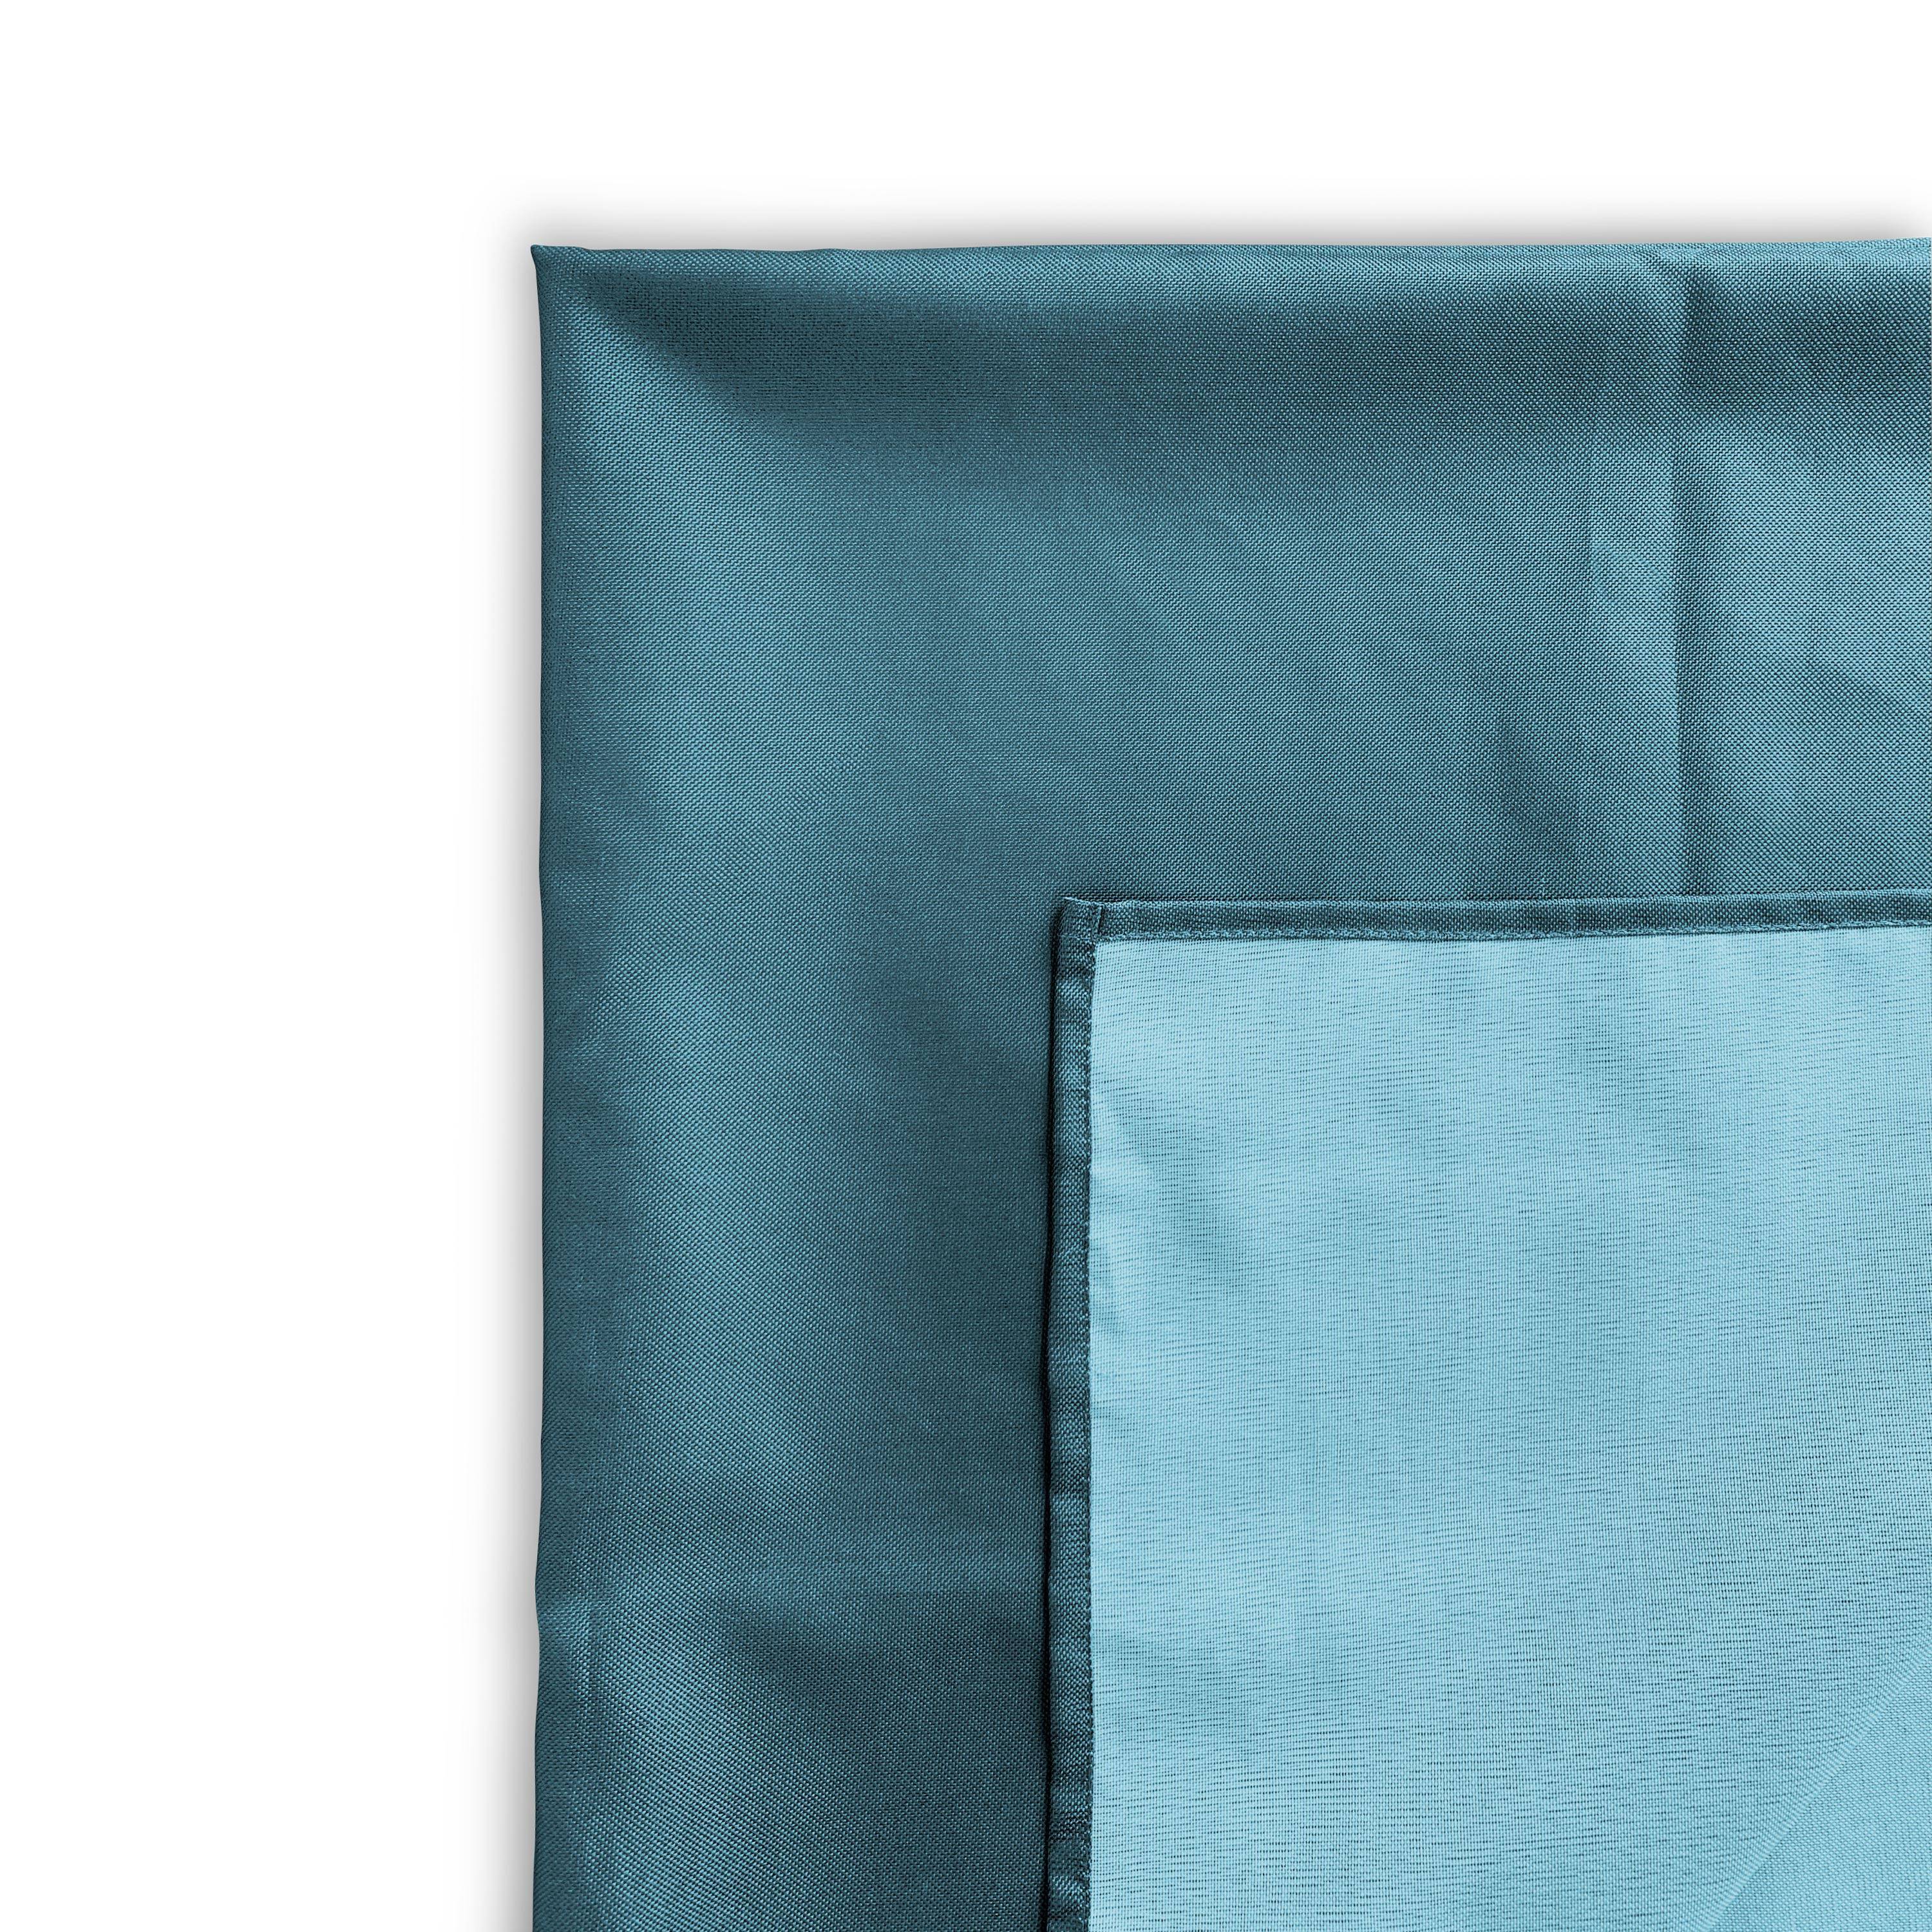 Kollection EXOTIQUE - Outdoor-Tischdecke 300 x 140 cm Entenblau, 100% Polyester, schützt den Tisch, UV-Schutz, sommerlicher Stil Photo3